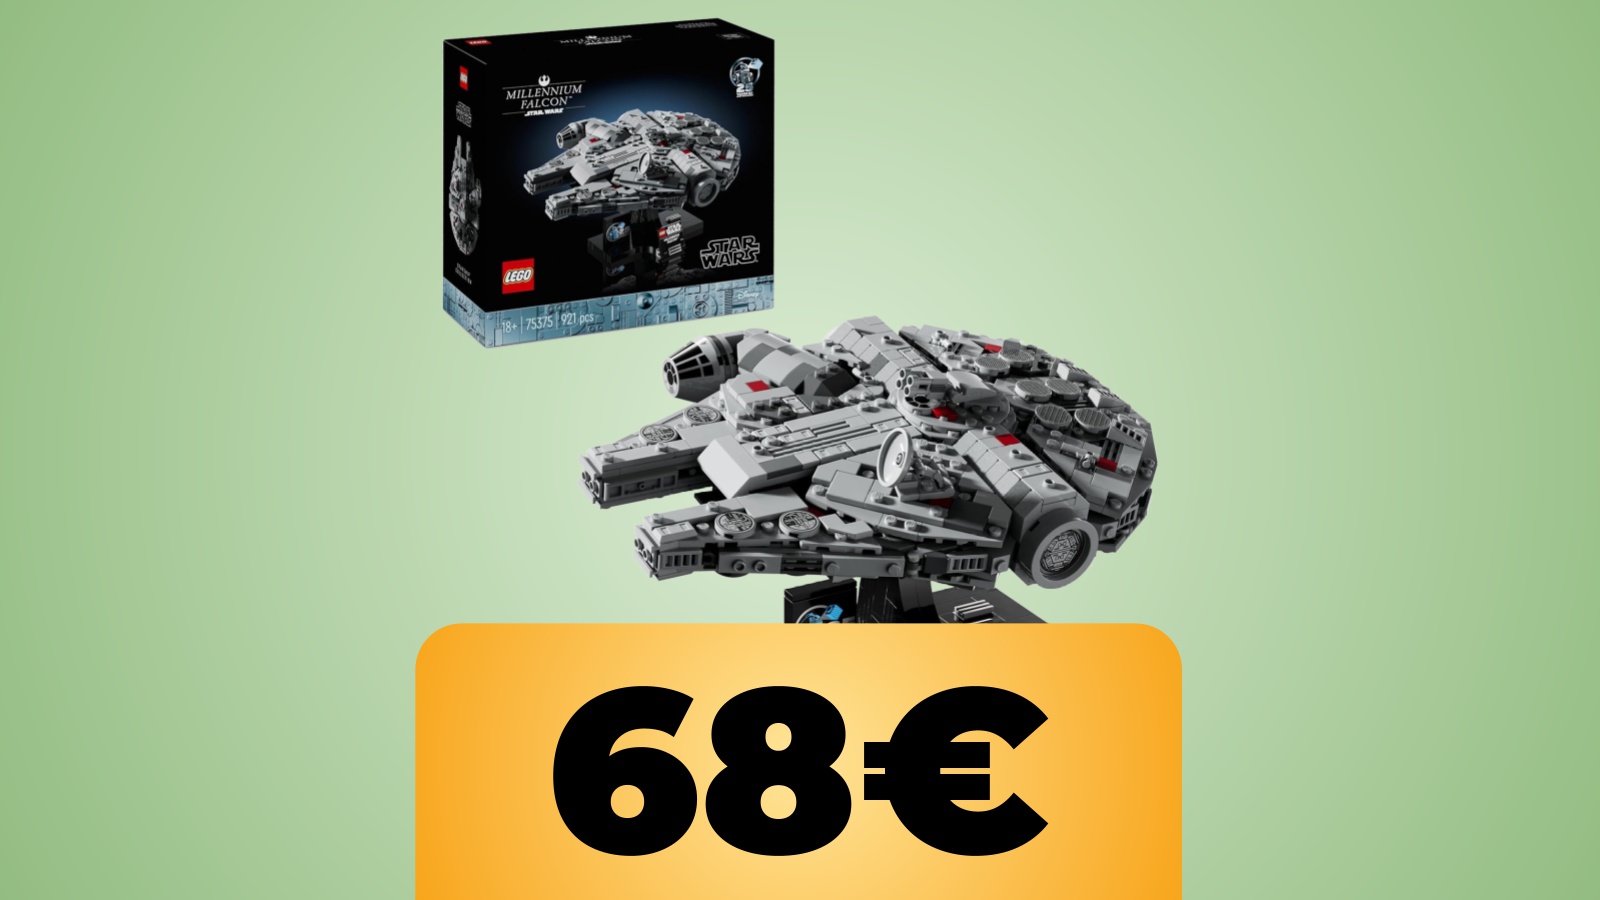 Il set LEGO Star Wars Millennium Falcon (75375) è al prezzo minimo storico su Amazon